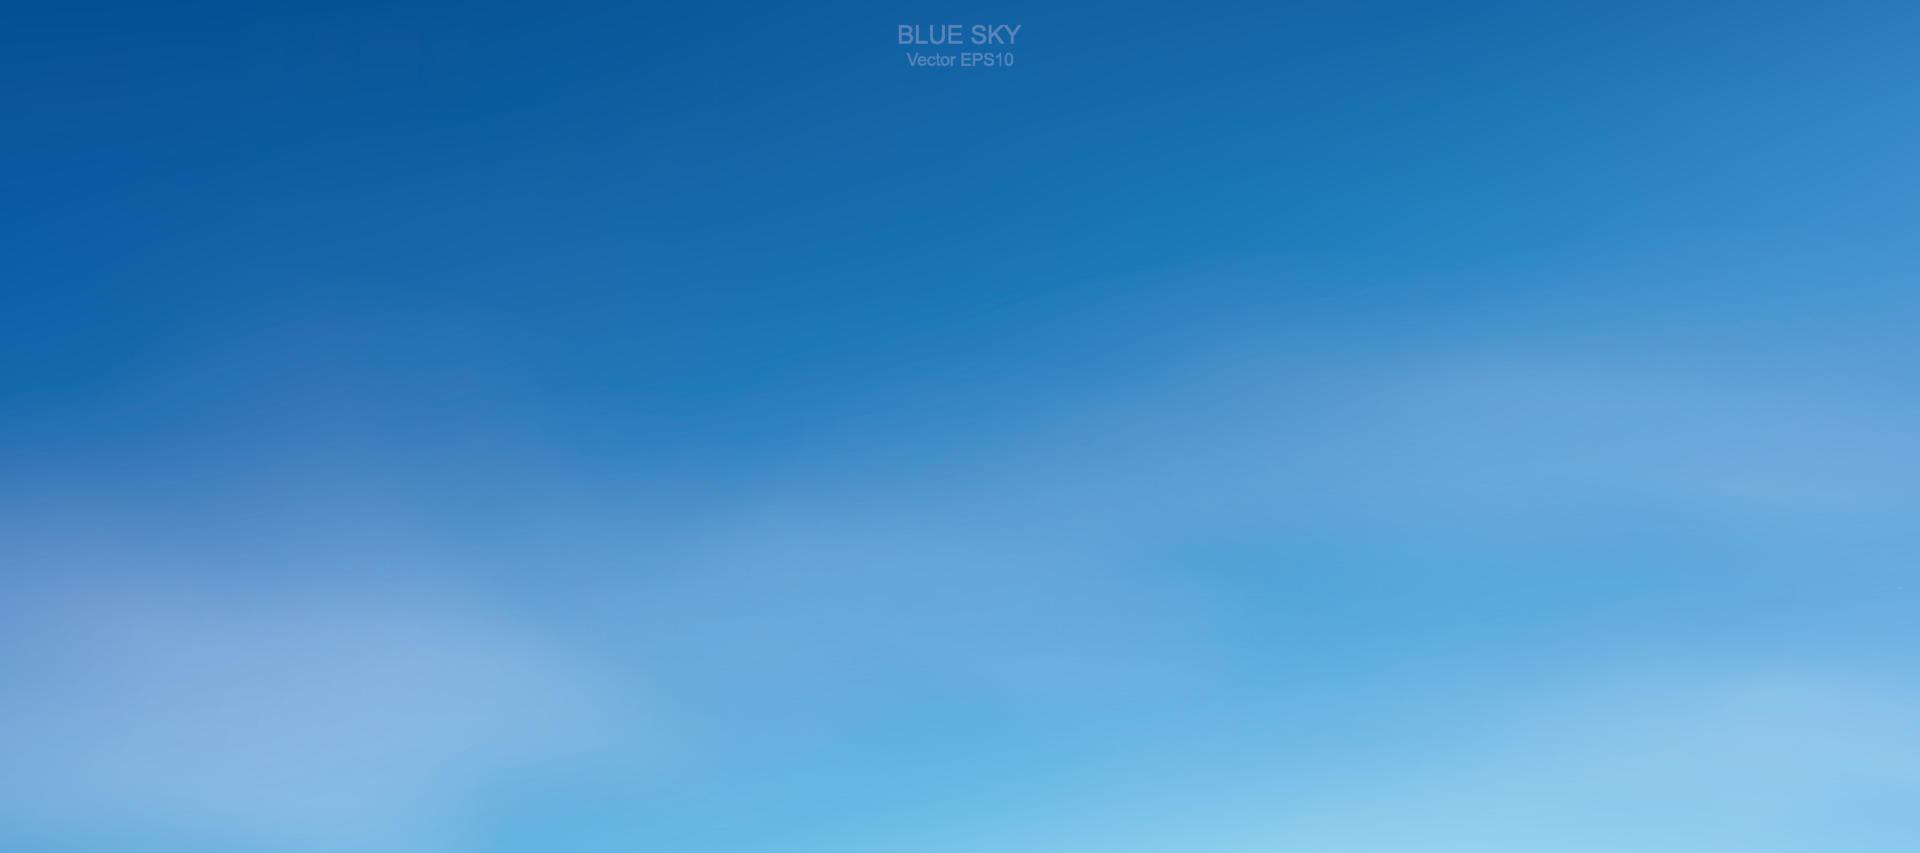 fond de ciel bleu avec des nuages blancs. ciel abstrait pour fond naturel. illustration vectorielle. vecteur